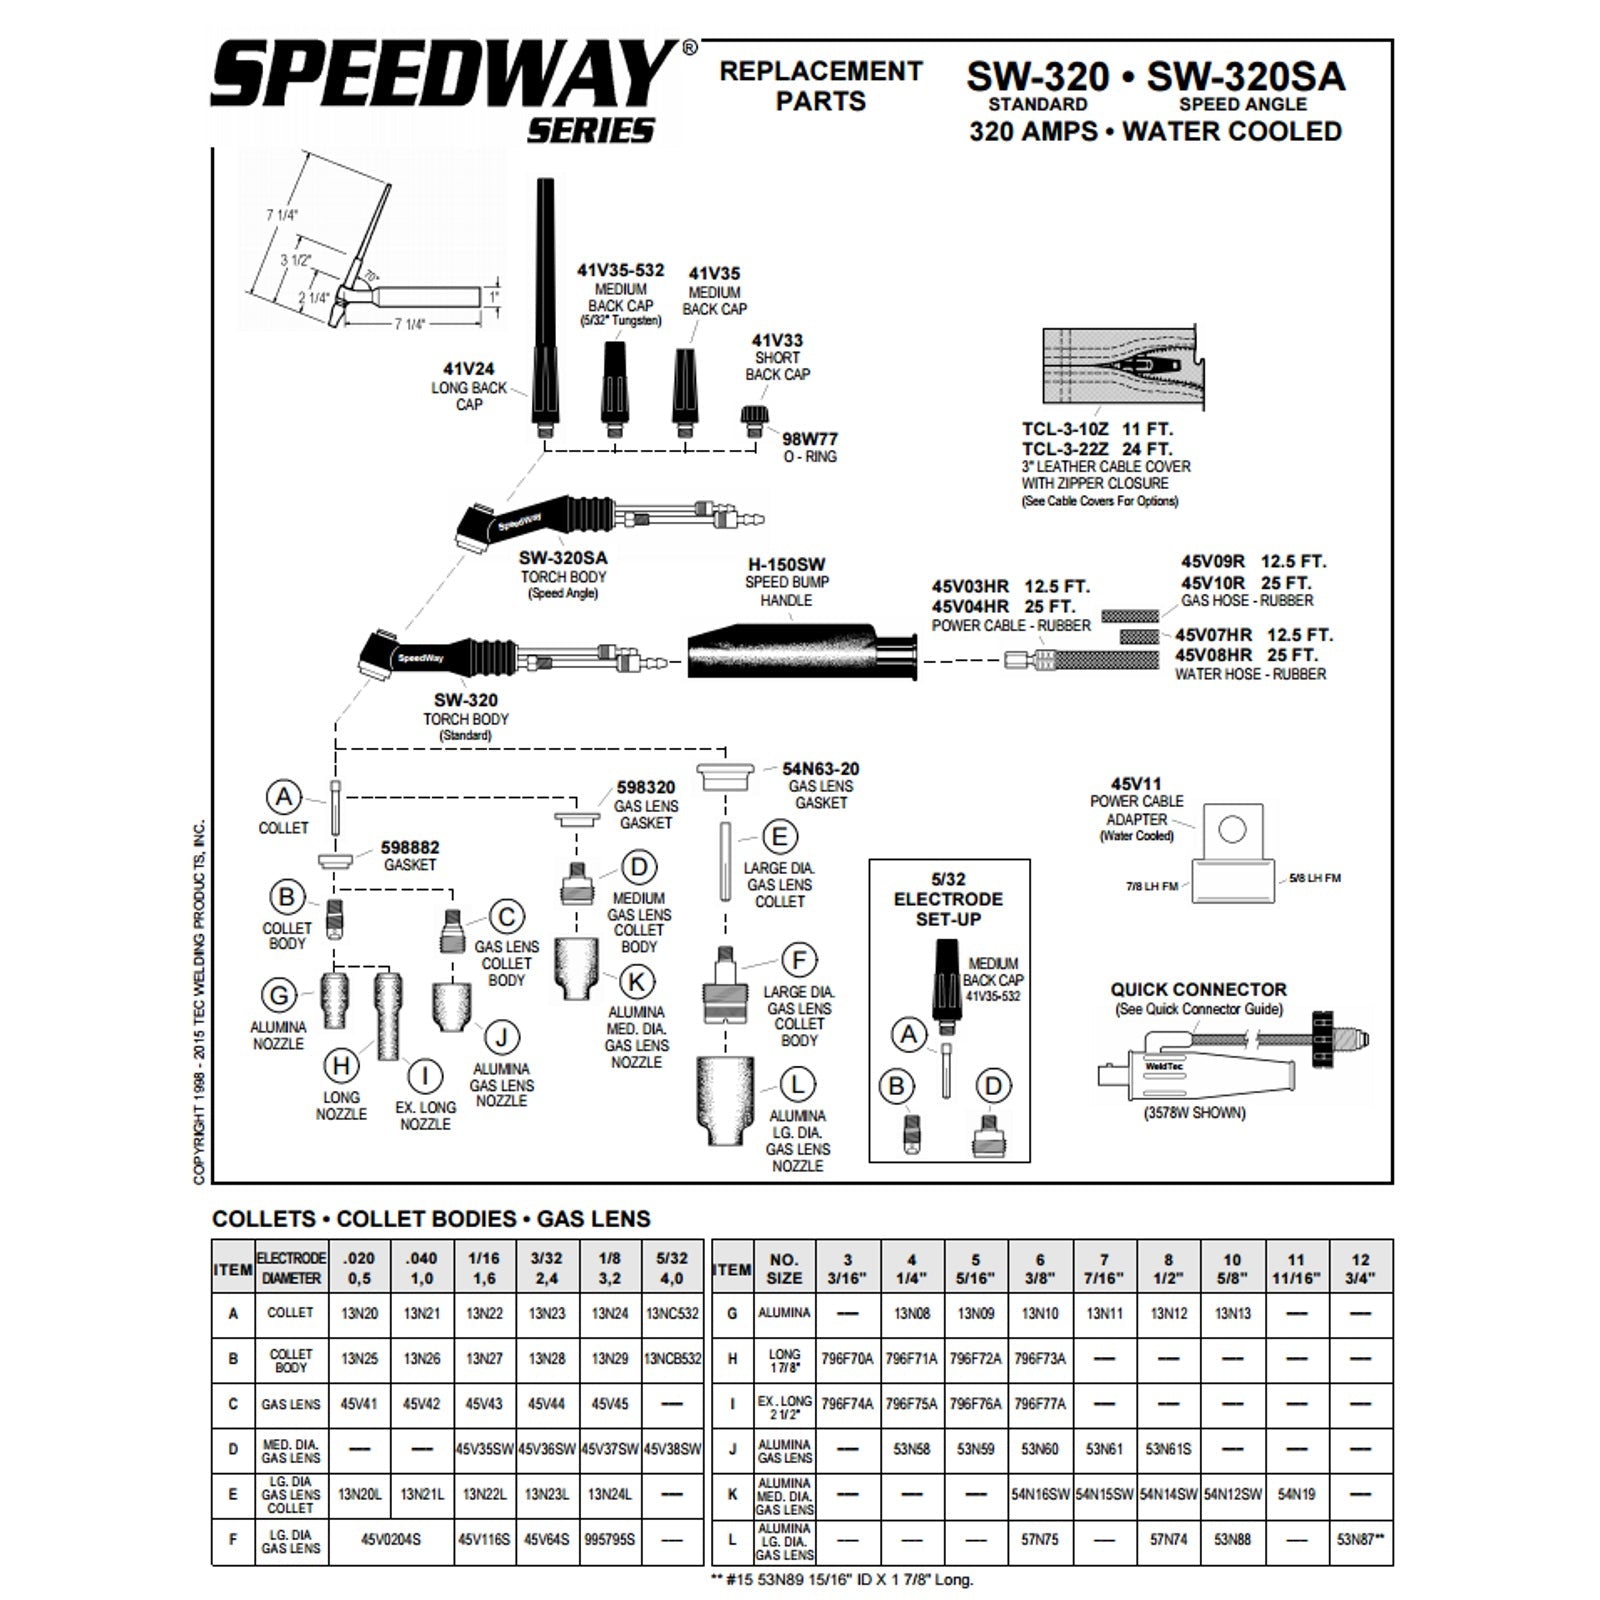 Weldtec 25ft Speedway Deluxe TIG Torch Package (SW-320-25DX)